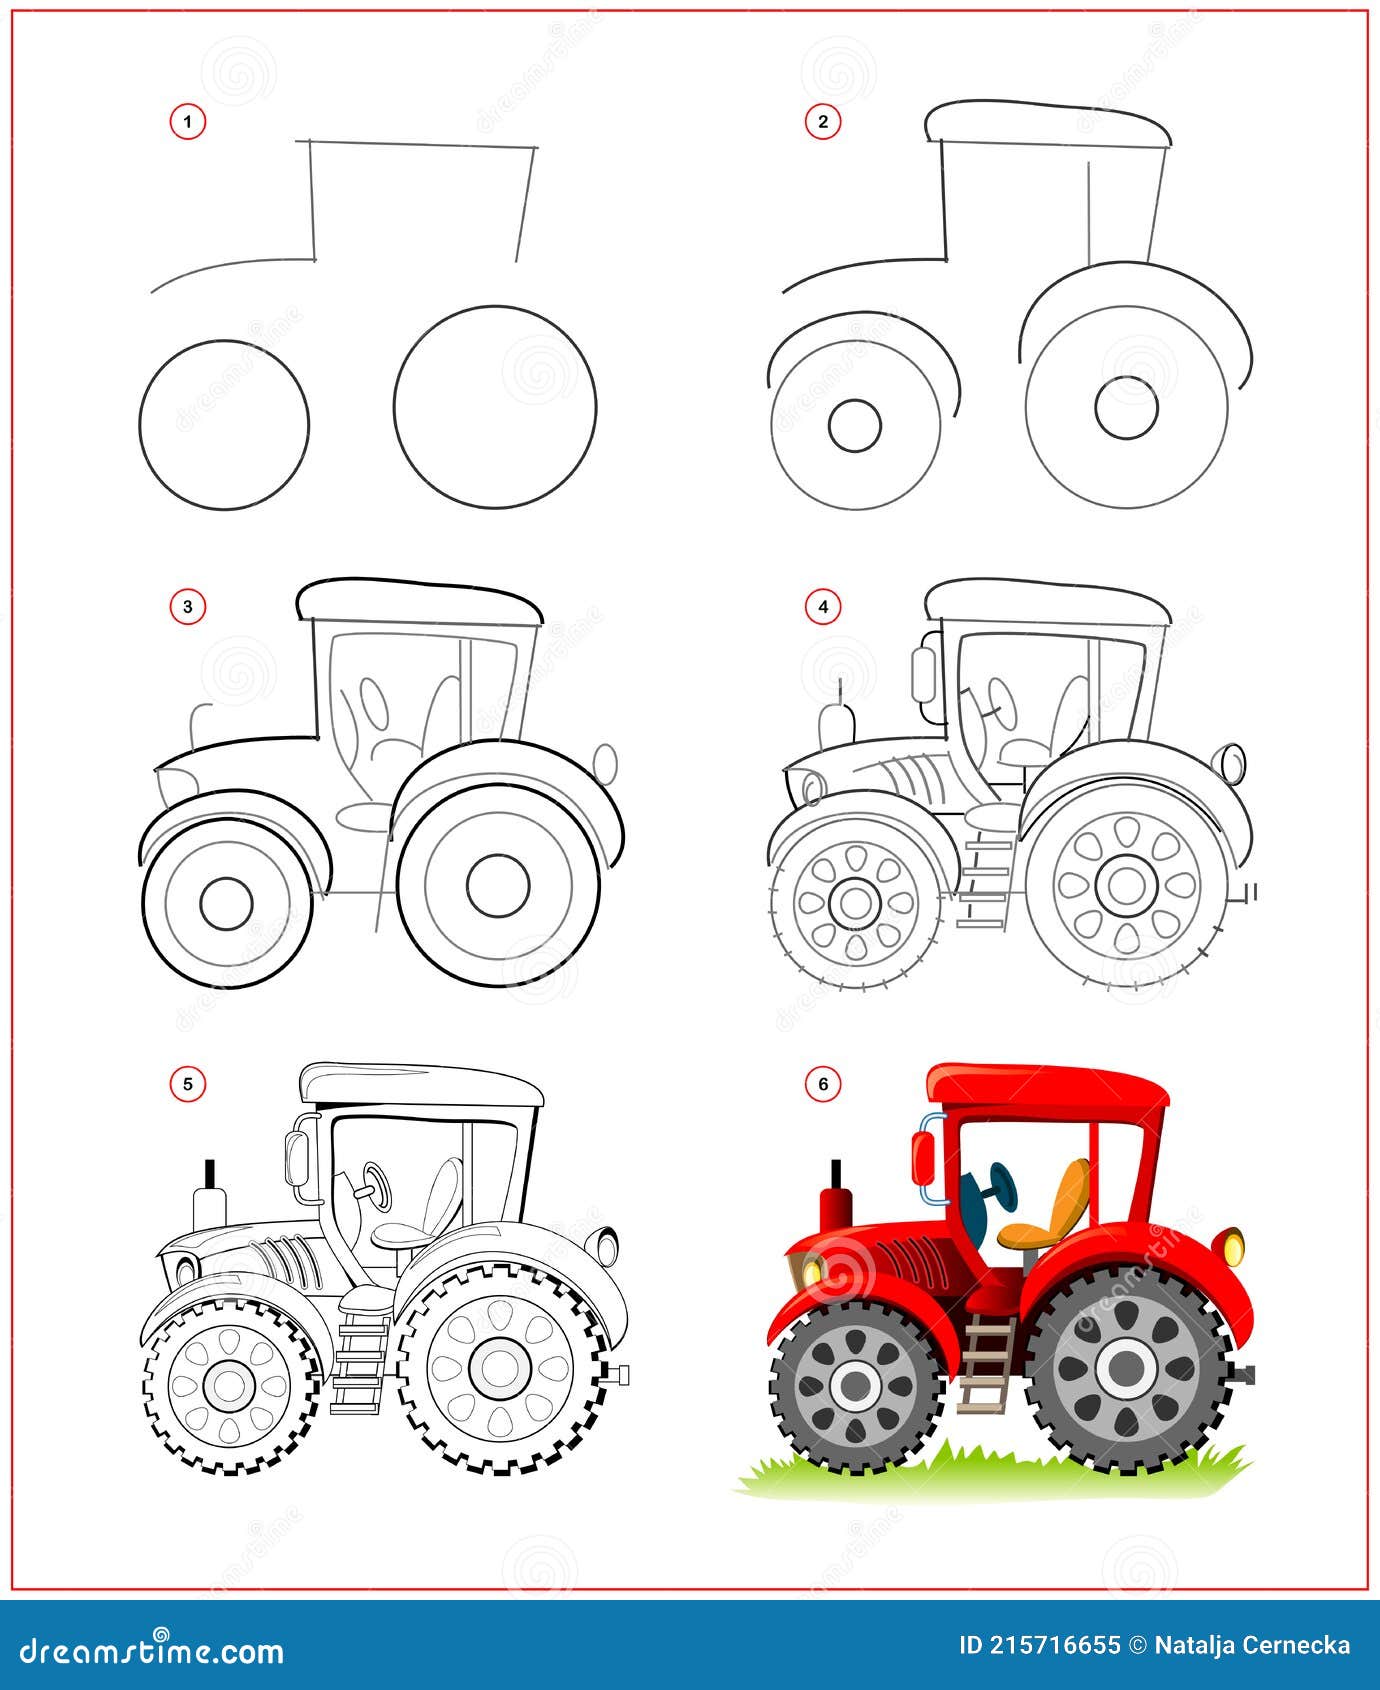 Игрушка трактор рисунок карандашом